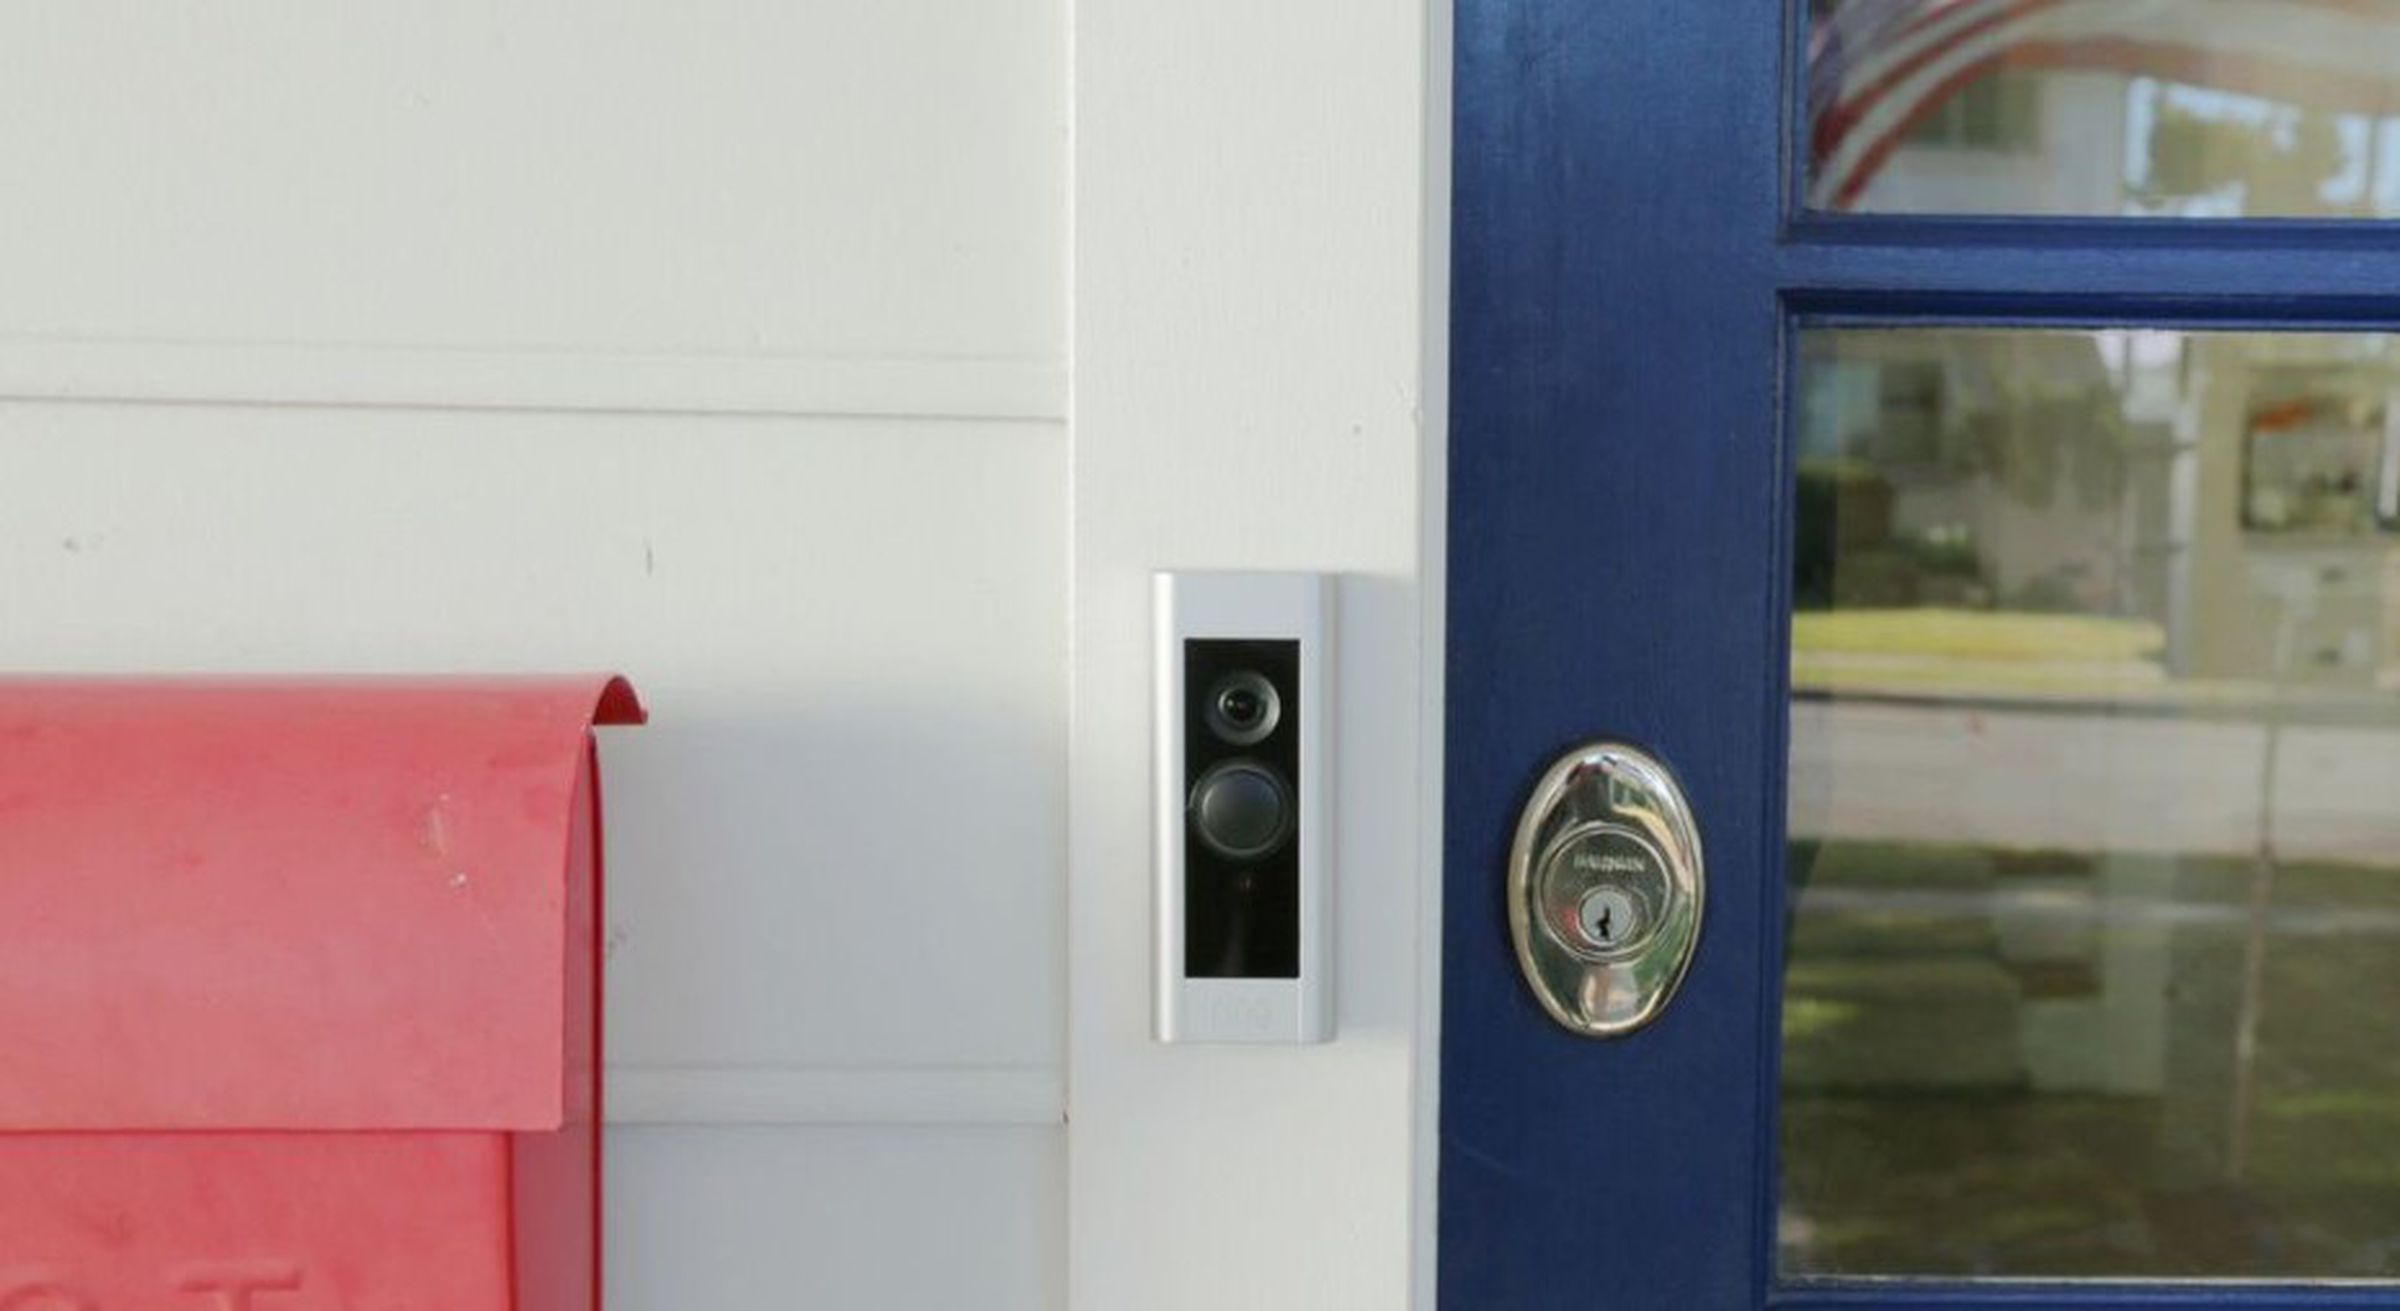 ring video doorbell pro